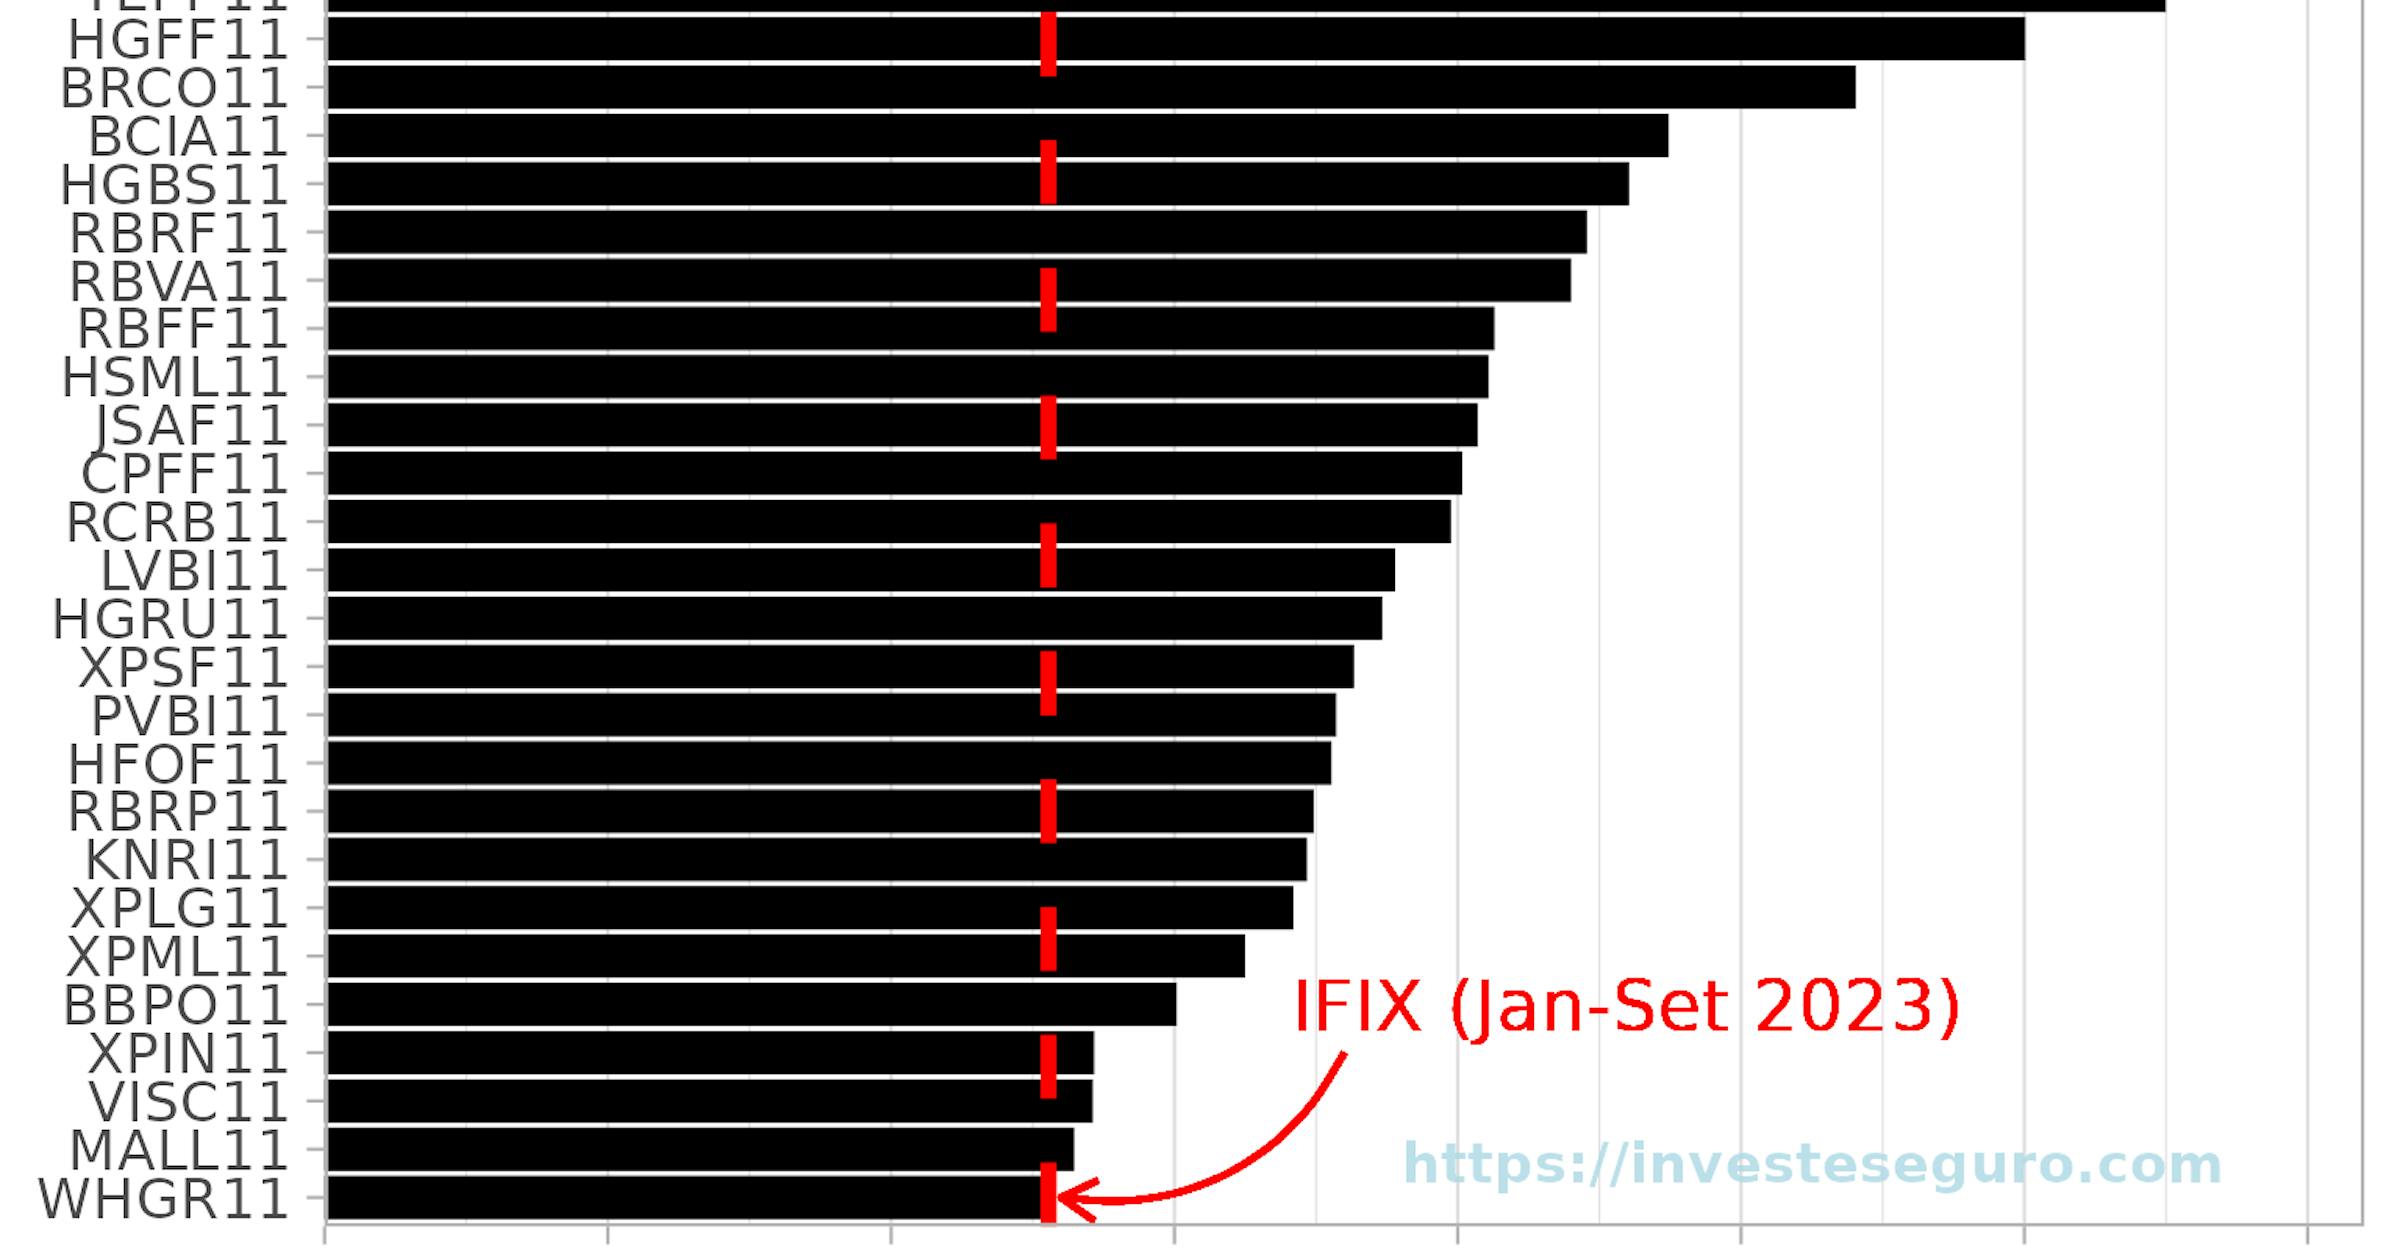 Ranking dos fundos imobiliários que superaram o IFIX até setembro de 2023.